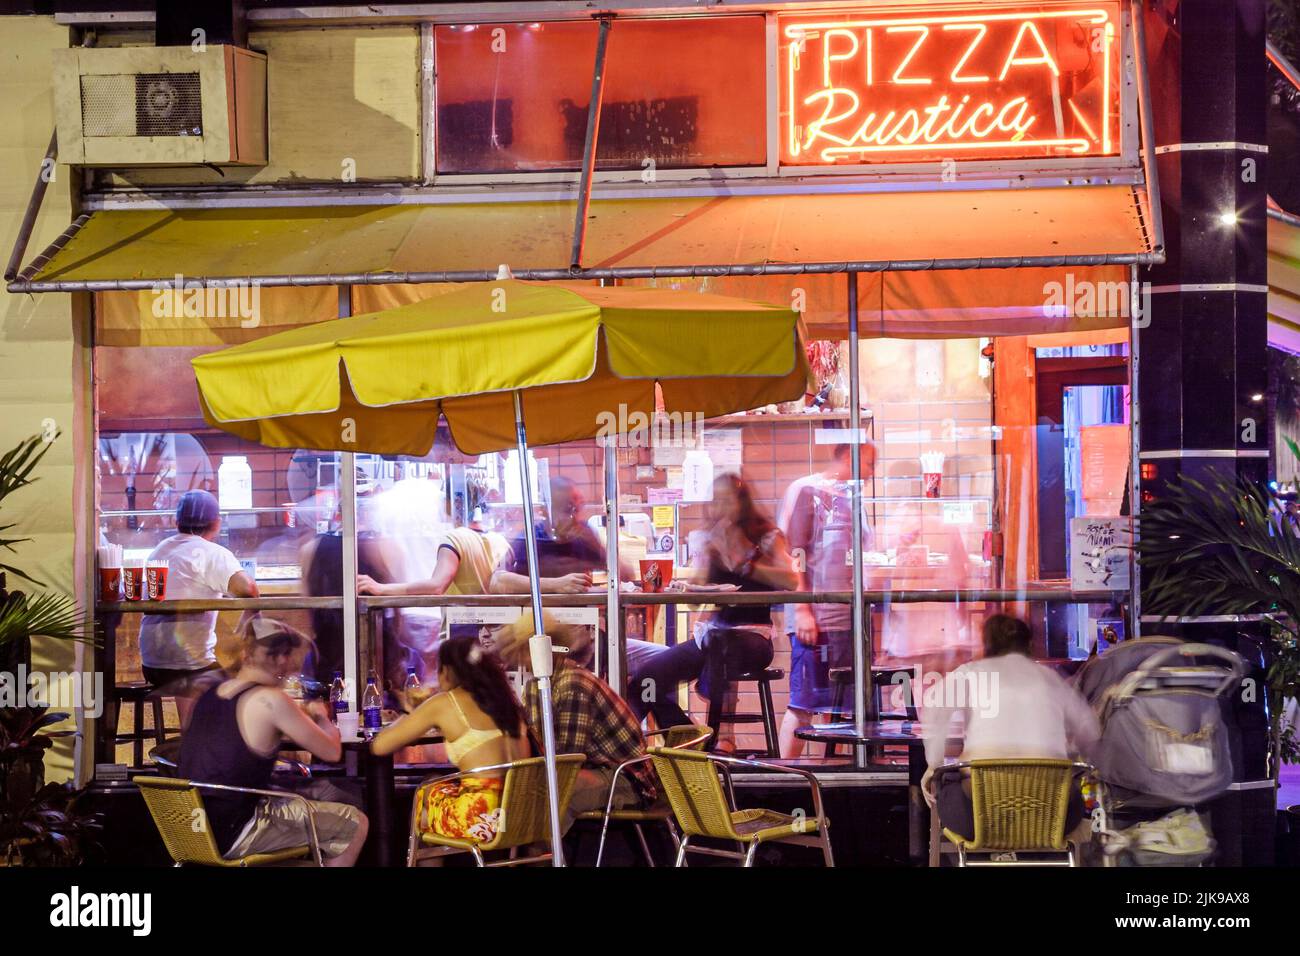 Miami Beach Florida, Collins Avenue, Pizza Rustica, restaurante italiano restaurantes pizzería, comedor al aire libre, vida nocturna noche grupo personas Foto de stock